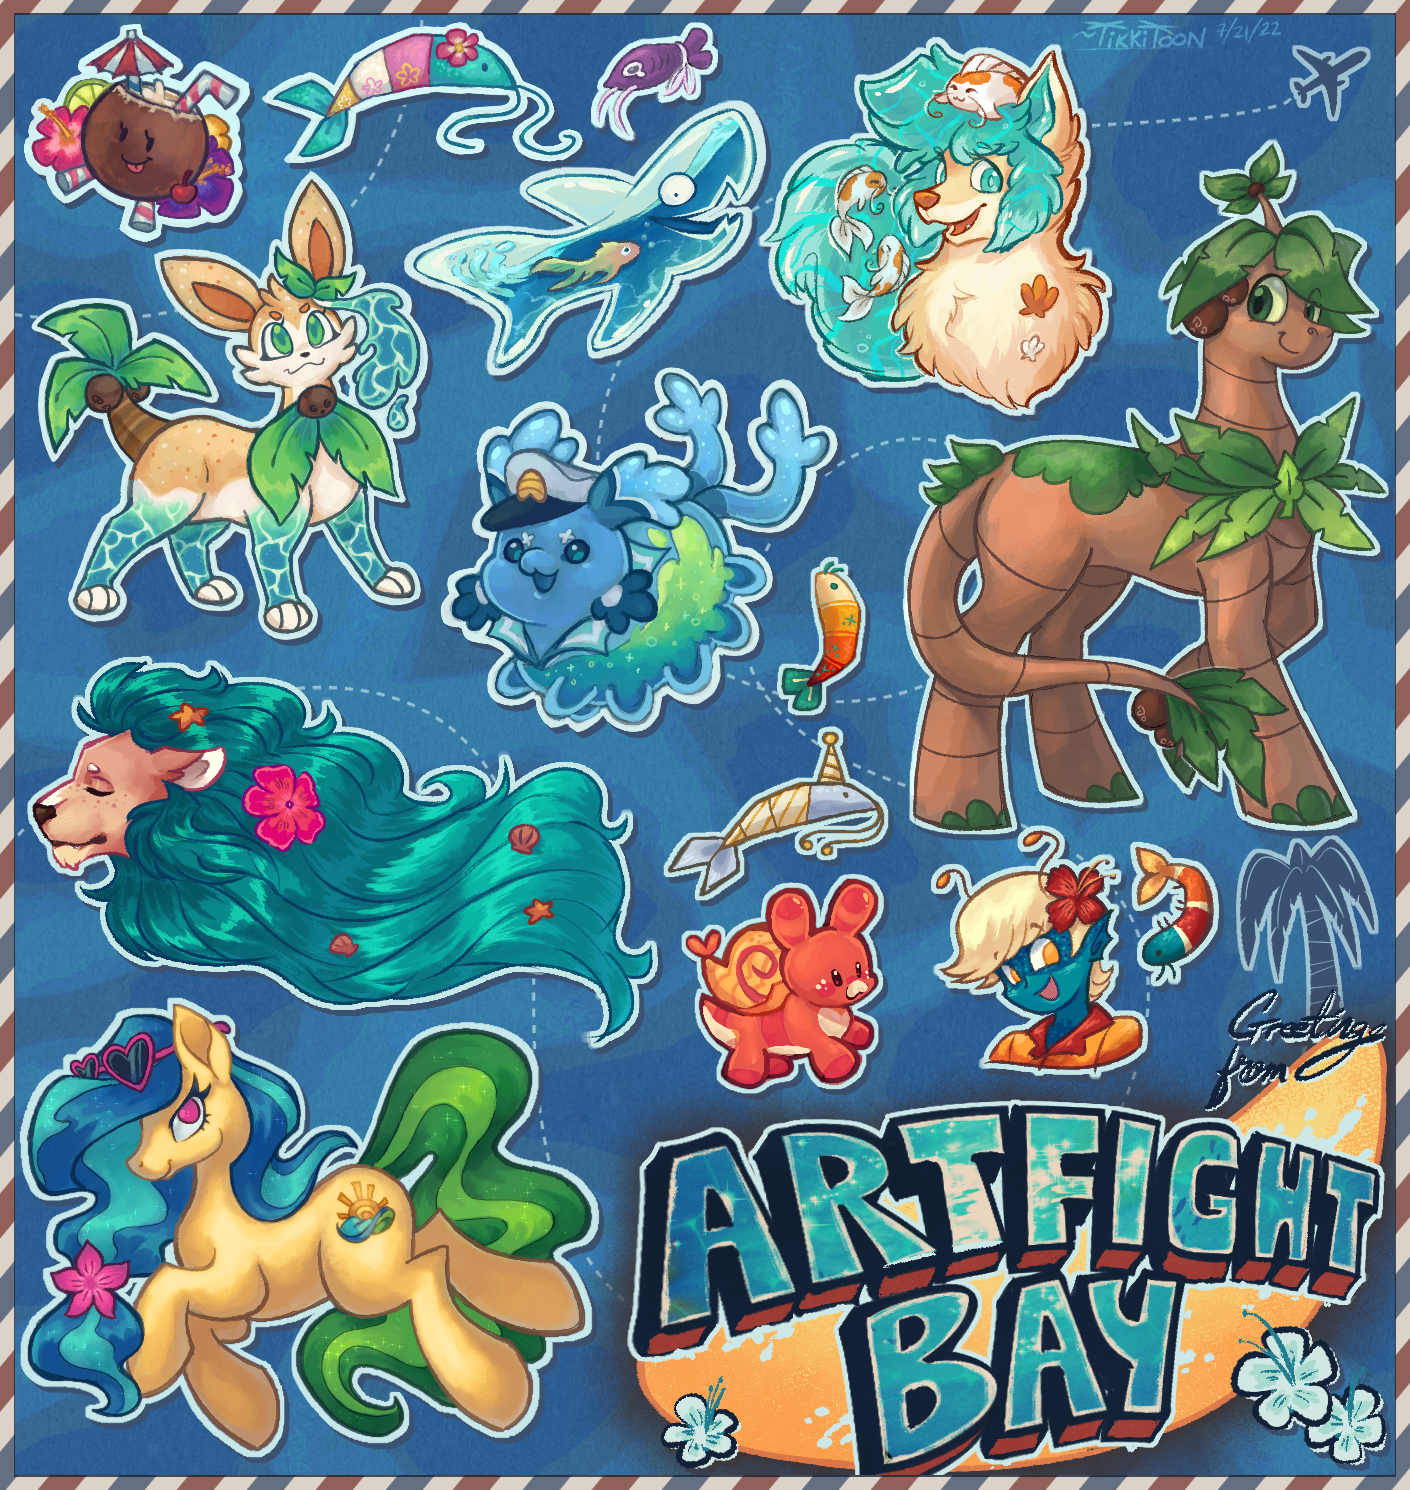 ArtFight Bay